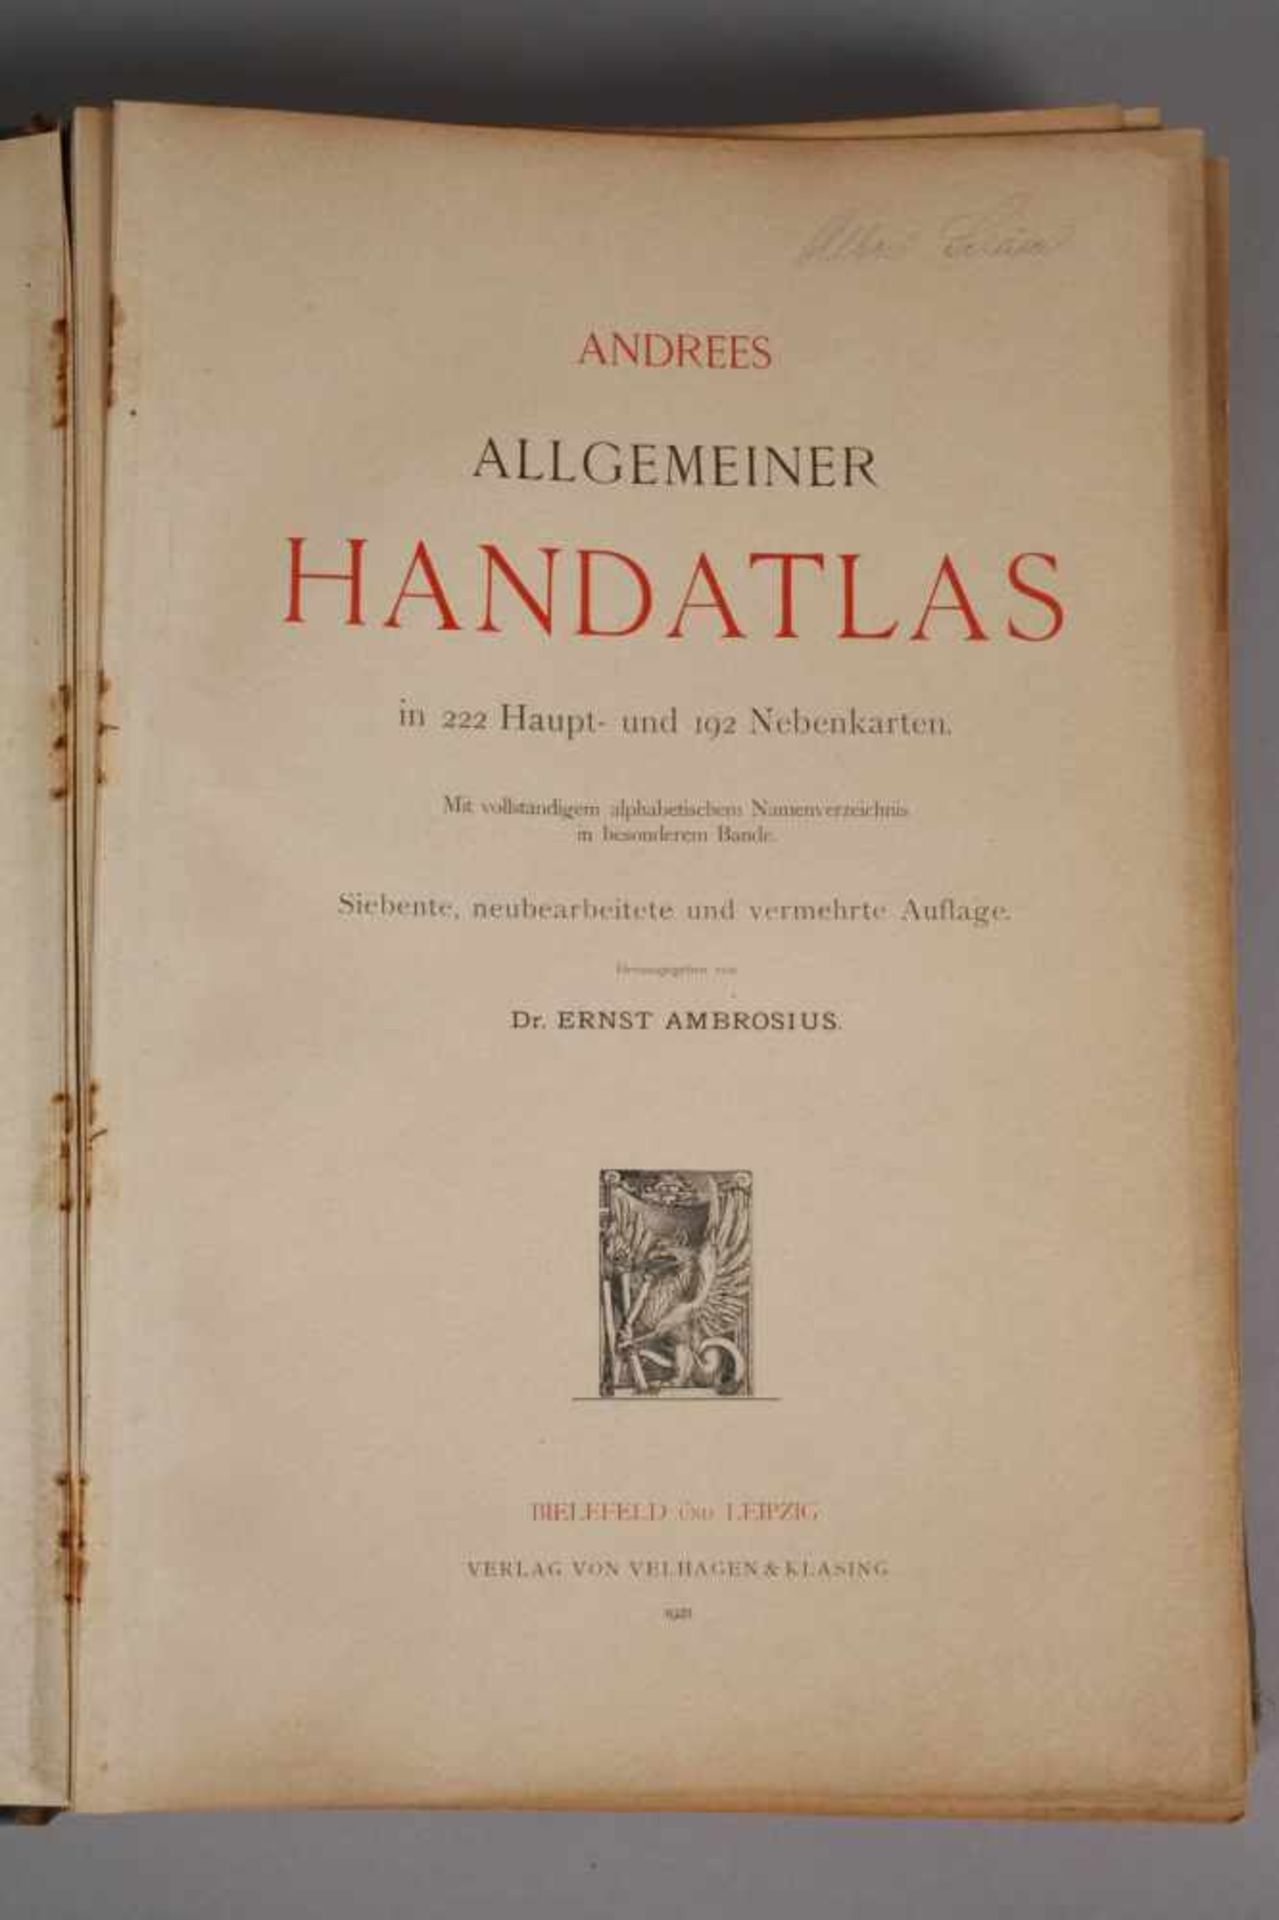 Andrees Allgemeiner Handatlasin 222 Haupt- und 192 Nebenkarten, 7. Aufl., hrsg. von E. Ambrosius, - Image 2 of 4